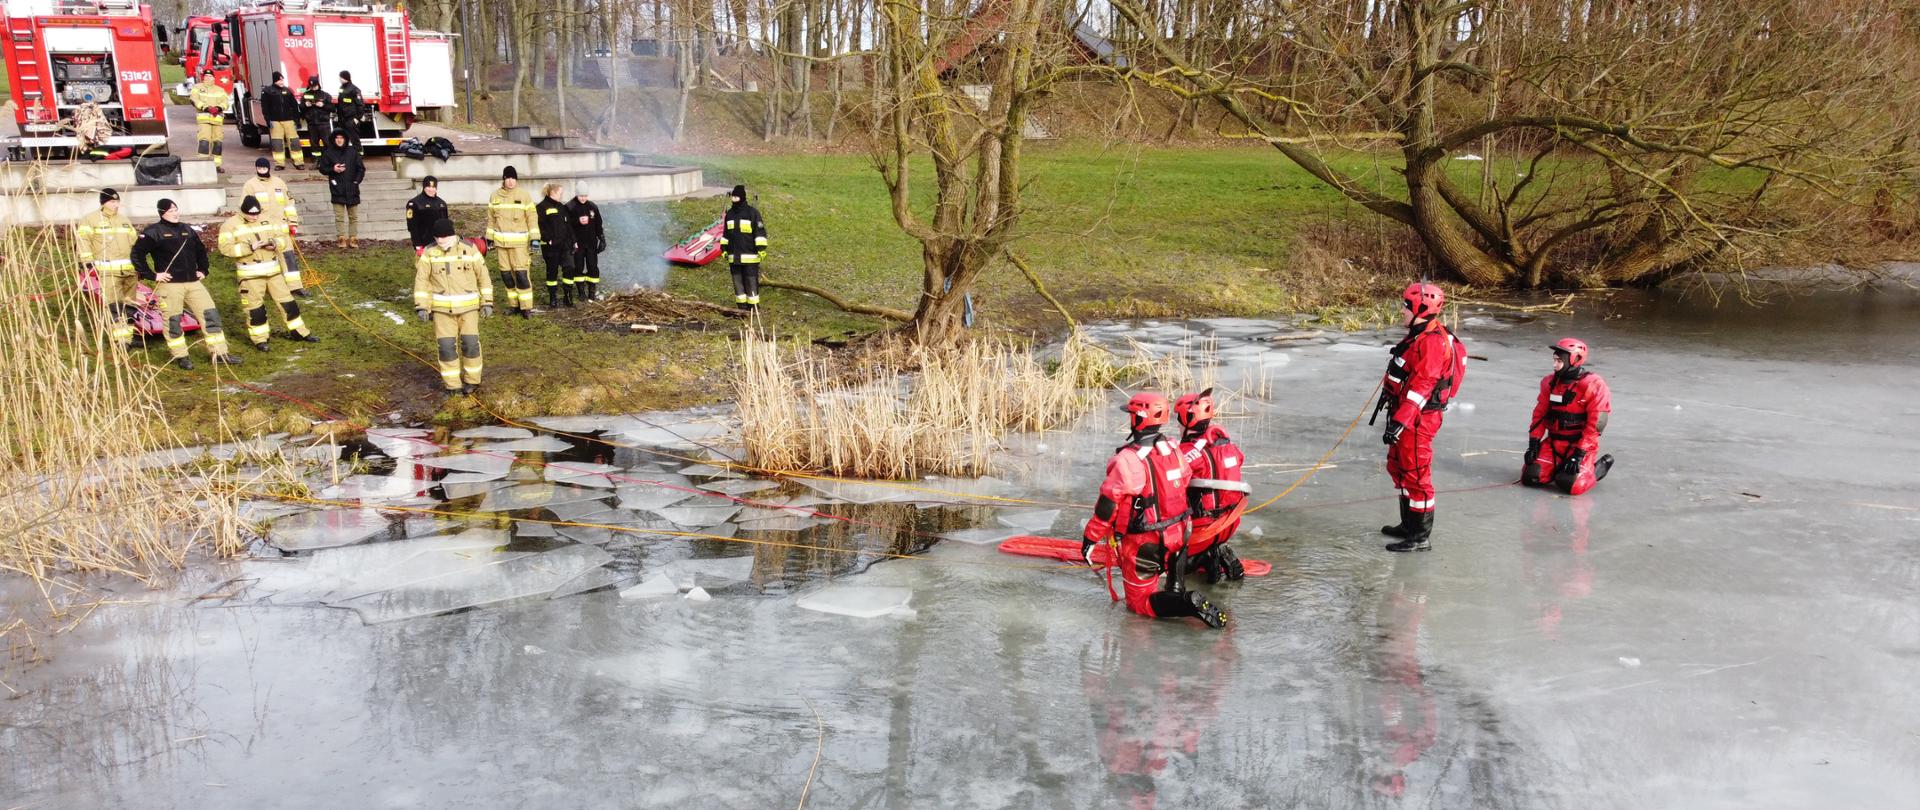 czterech ratowników w ubraniach do pracy w wodzie znajduje się na taflo lodu, pozostali ratownicy asekurują ich z brzegu